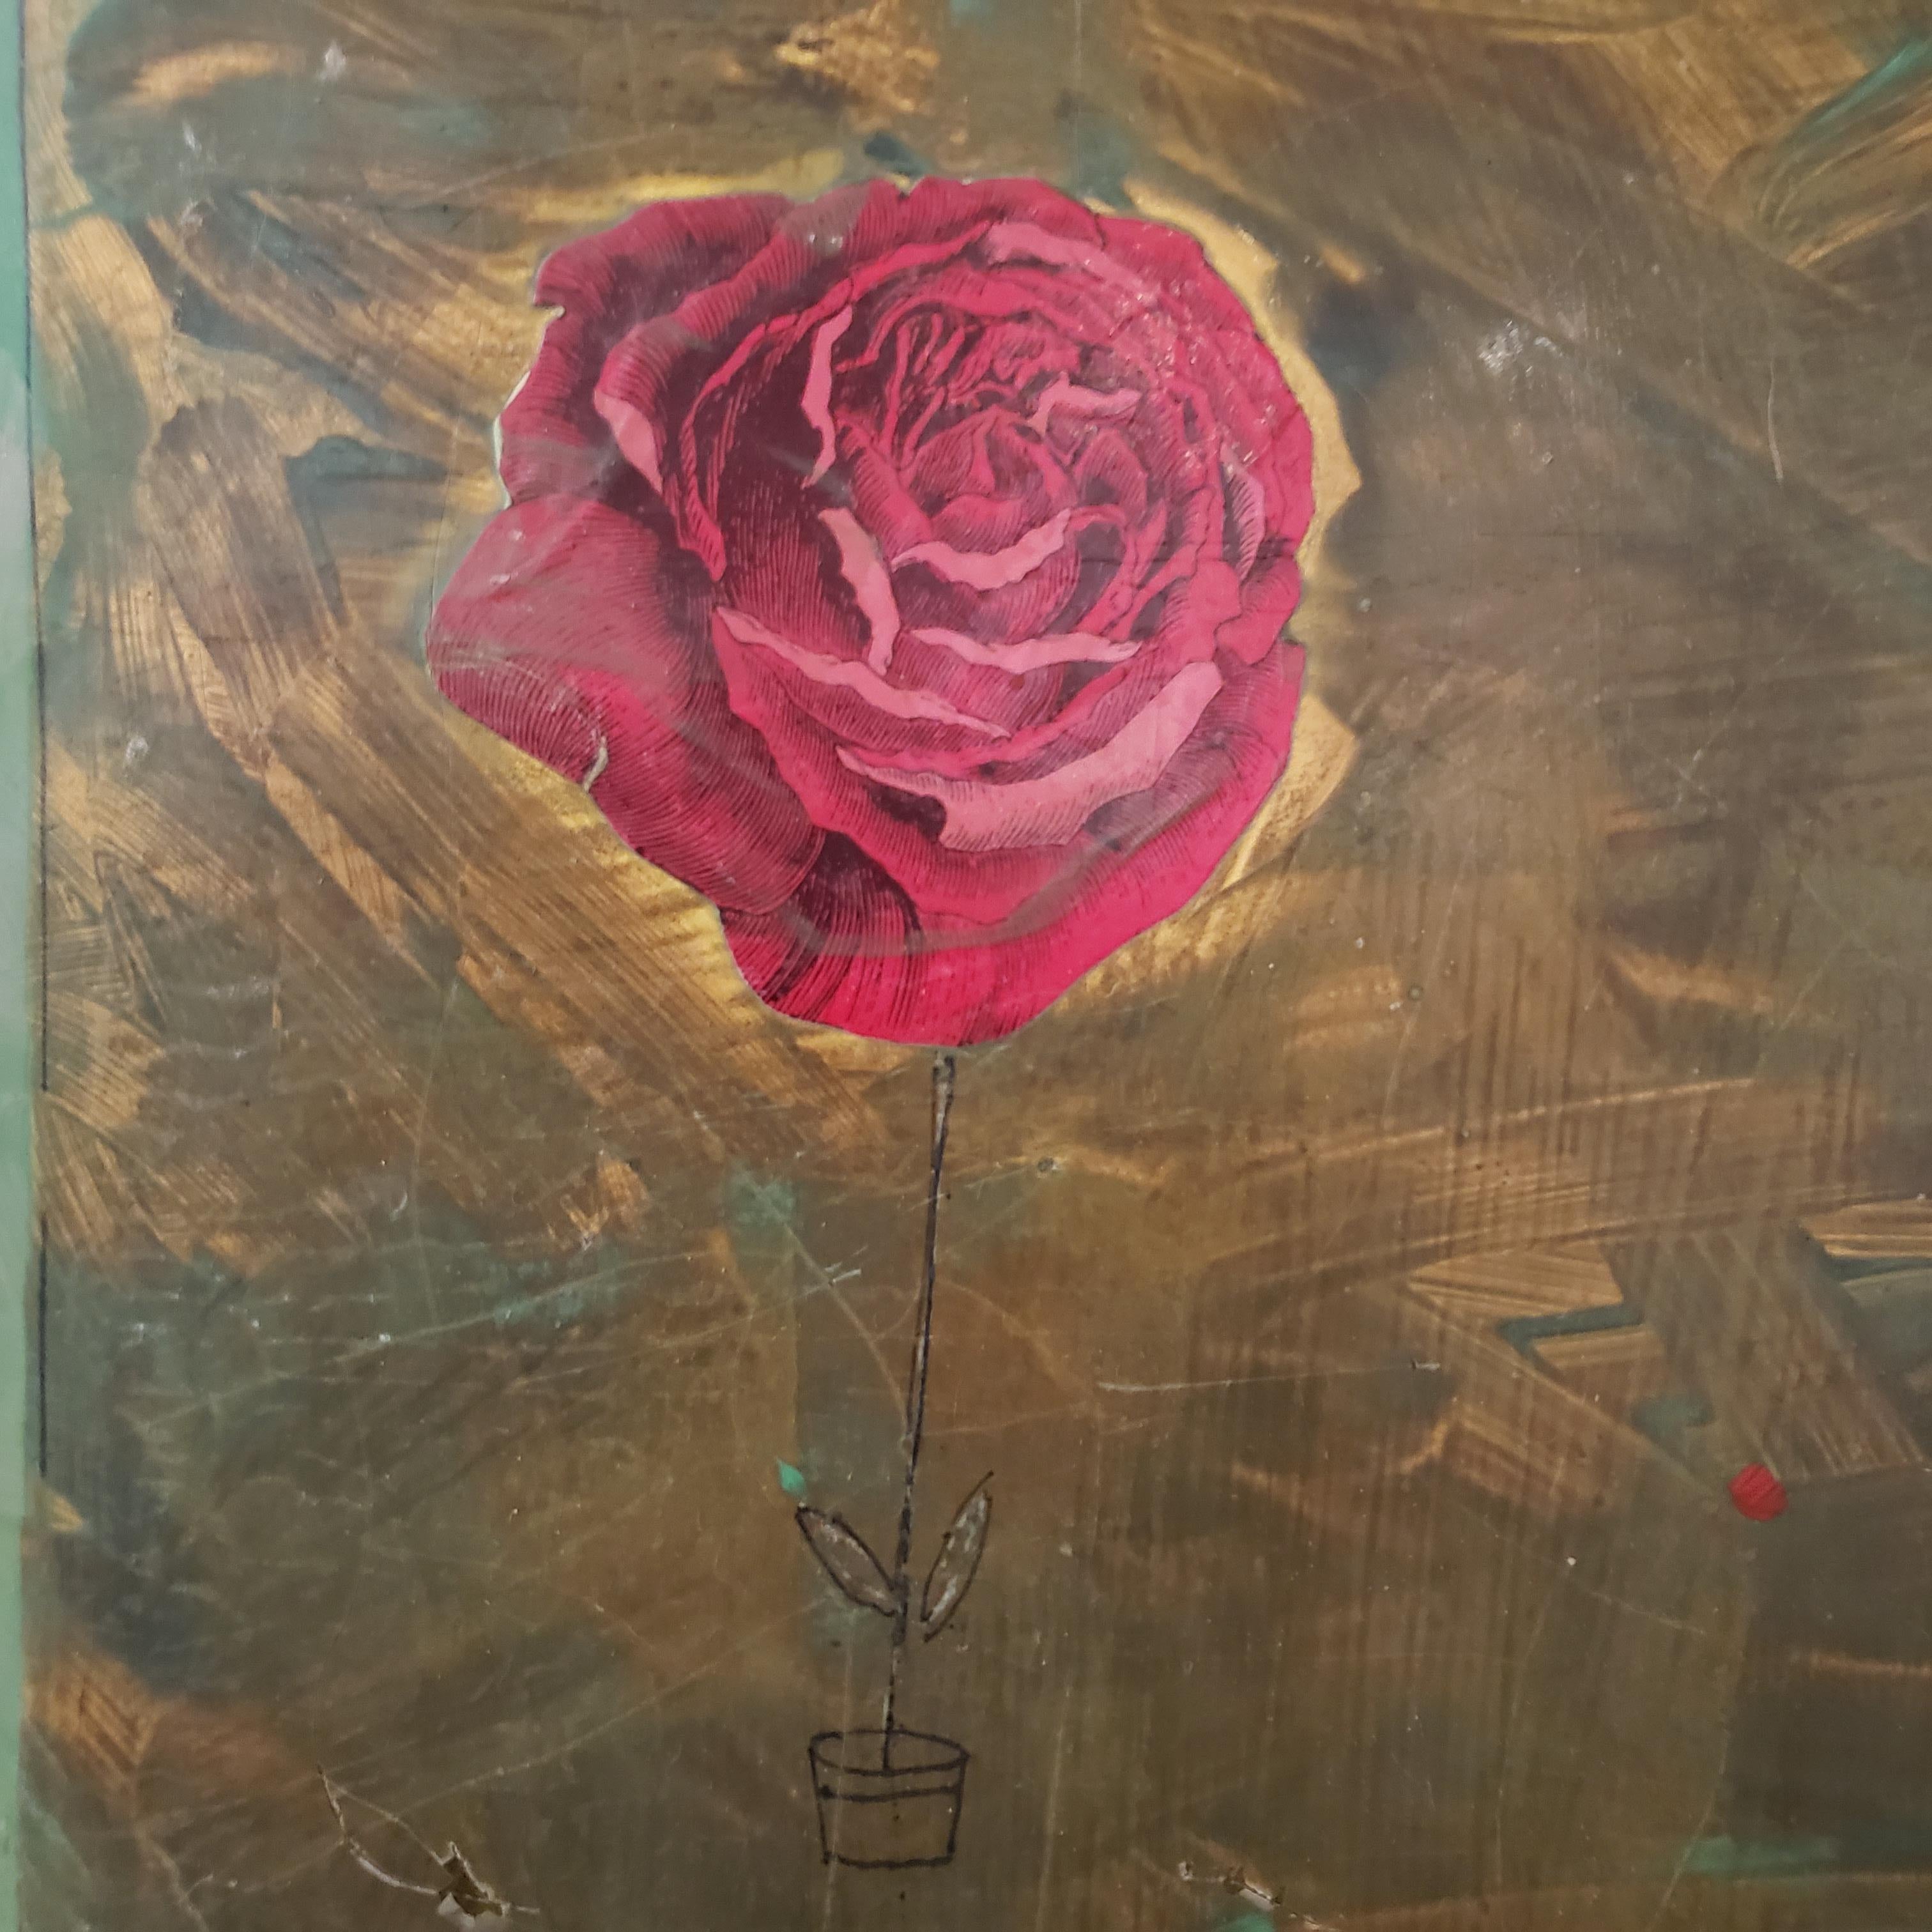 A Rose for A Friend, d'Inez Storer, est une huile sur médaille avec des techniques mixtes. Cette peinture a été conservée par la galerie depuis son achat et est en excellent état.

Biographie :
La recherche d'un matériau source dans les 